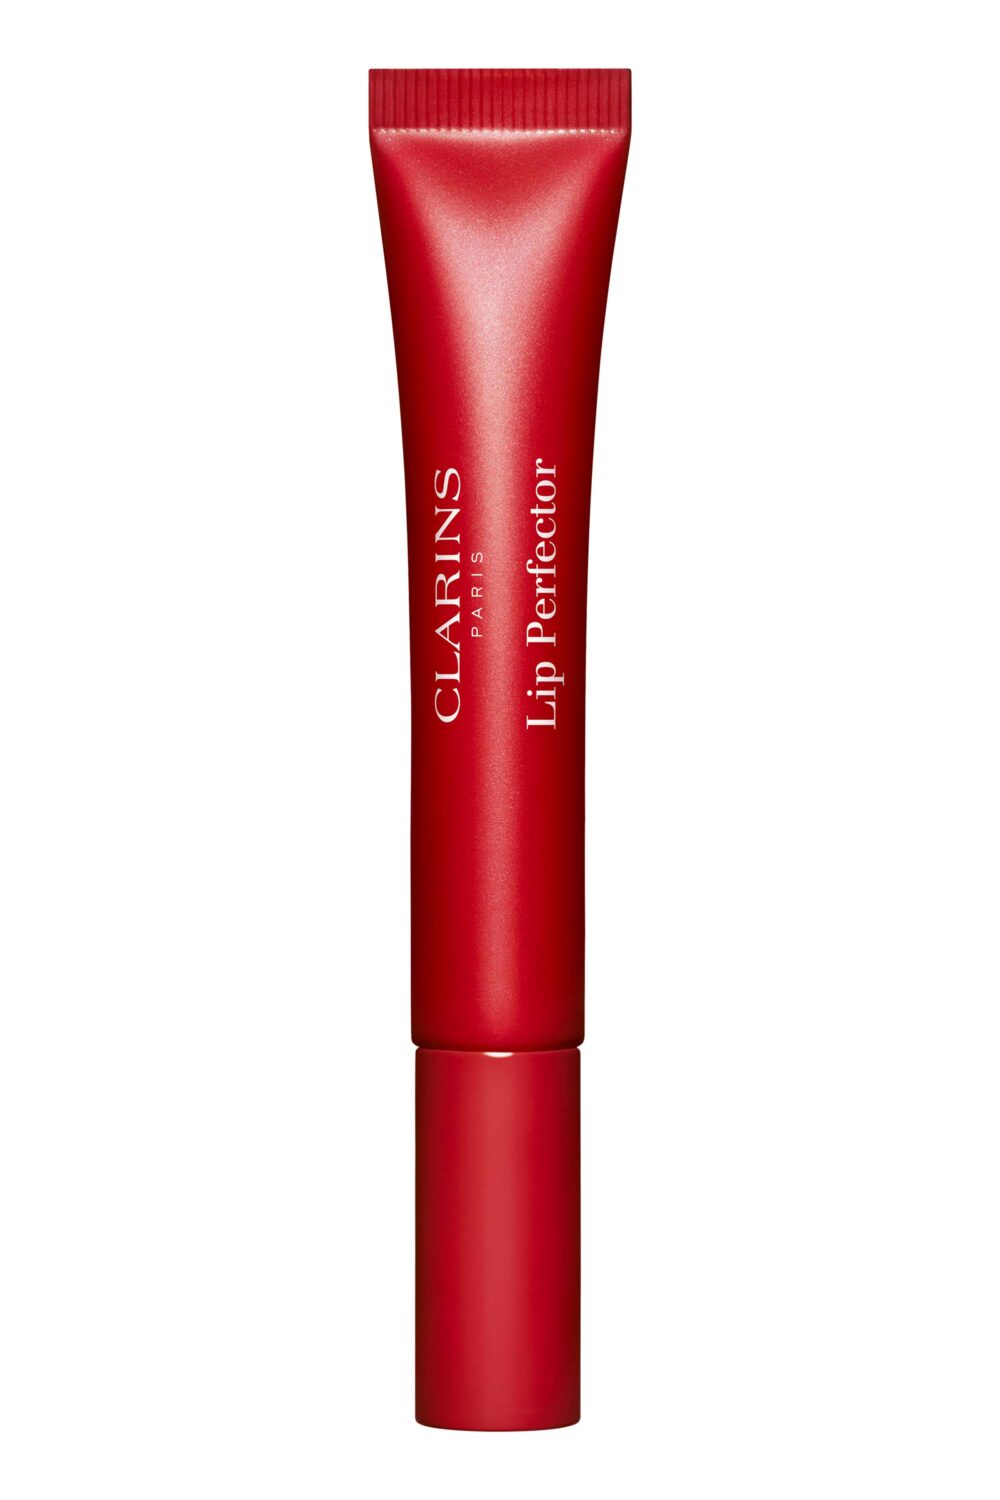 Clarins - Embellisseur lèvres et joues Glow Gloss 23 Pomegranate Glow